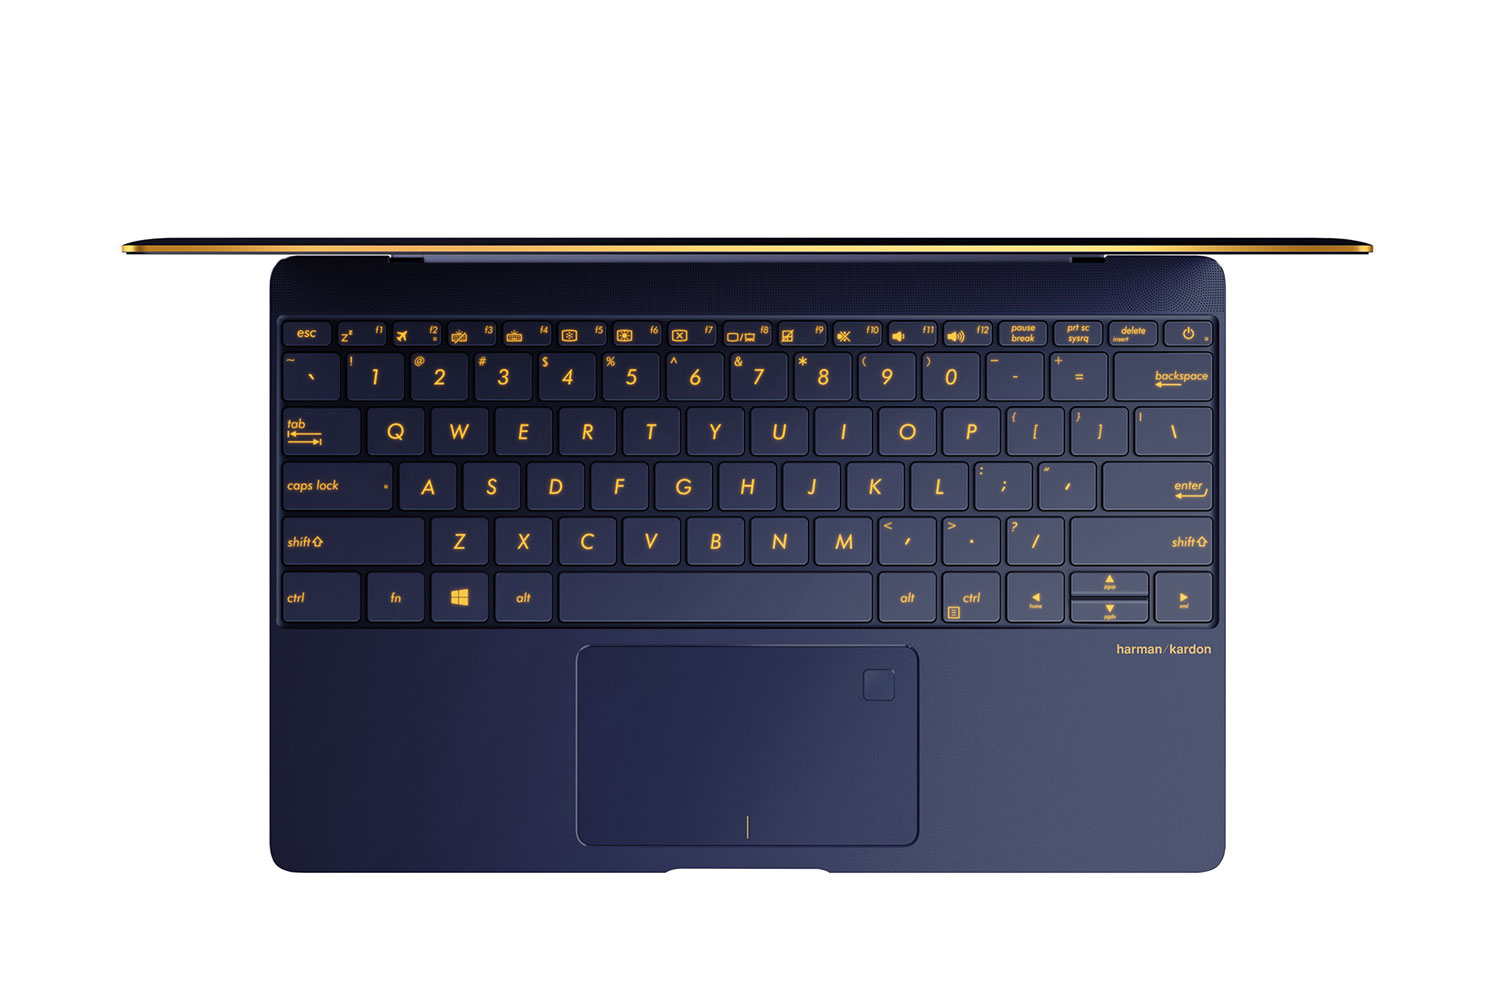 asus computex 2016 zenbook 3 keyboard light